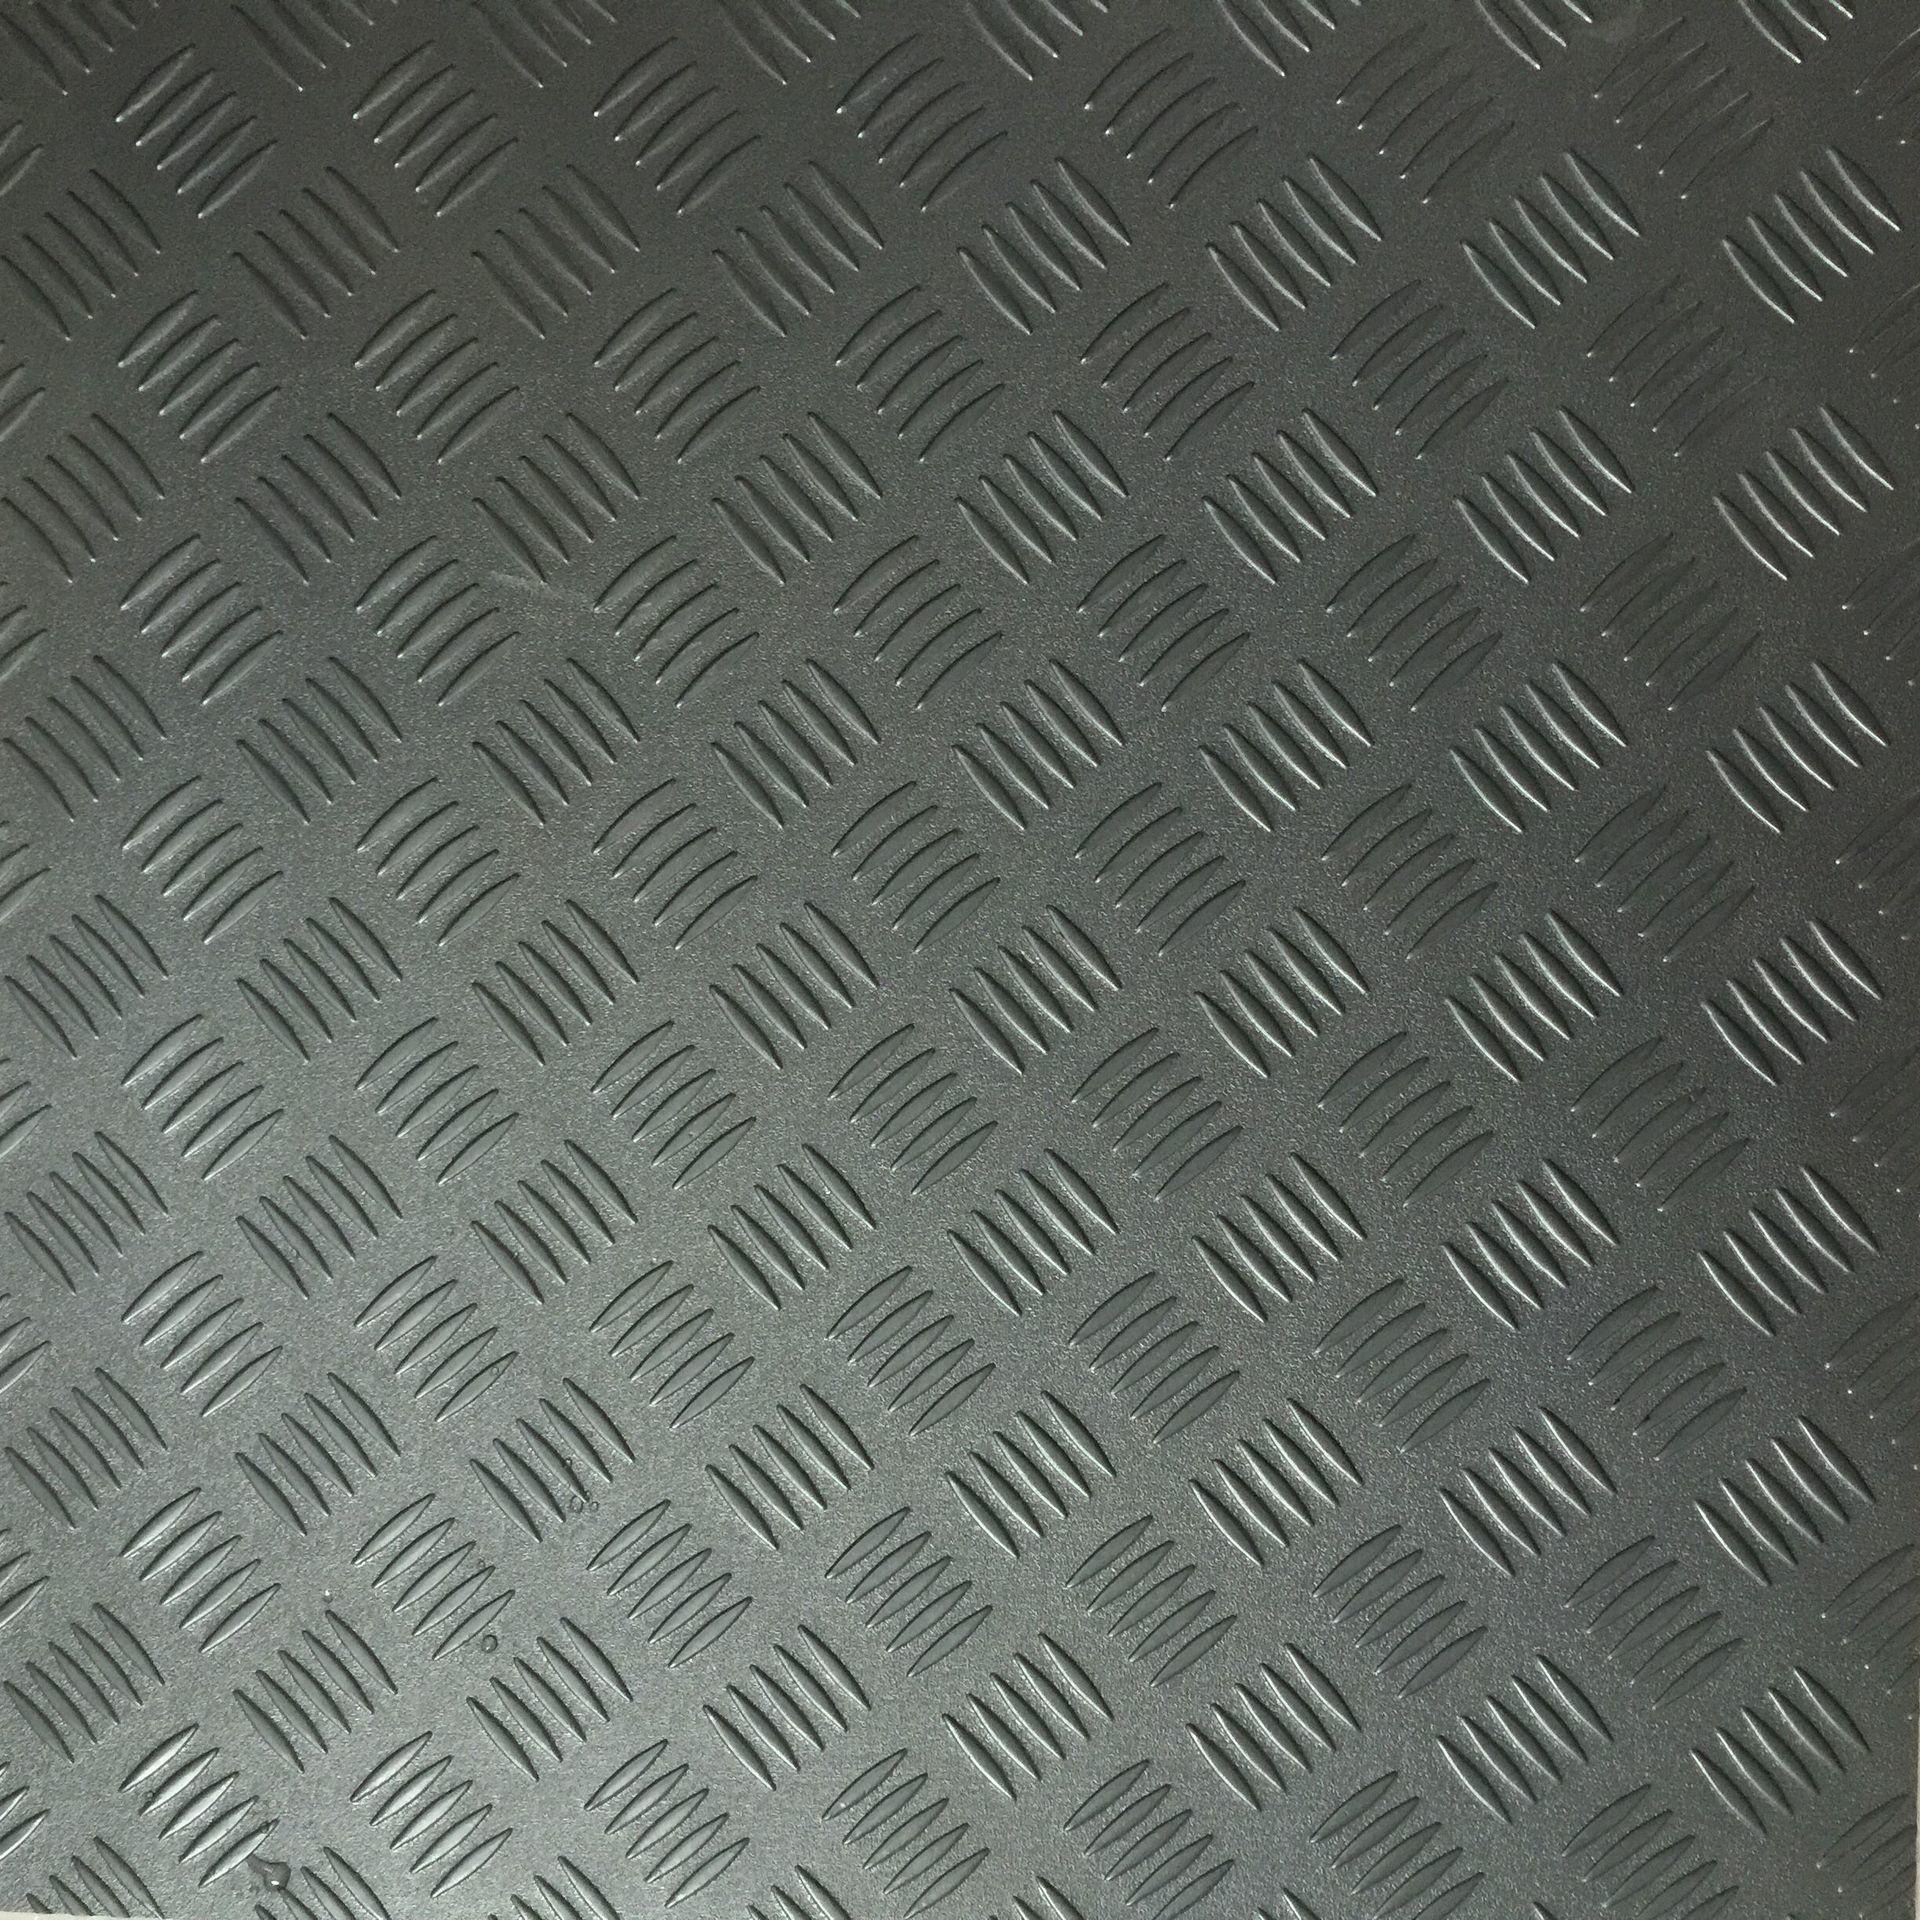 腾方厂家直销PVC地板 健身房专用钢板纹地胶 耐磨钢板纹塑胶地板 福建